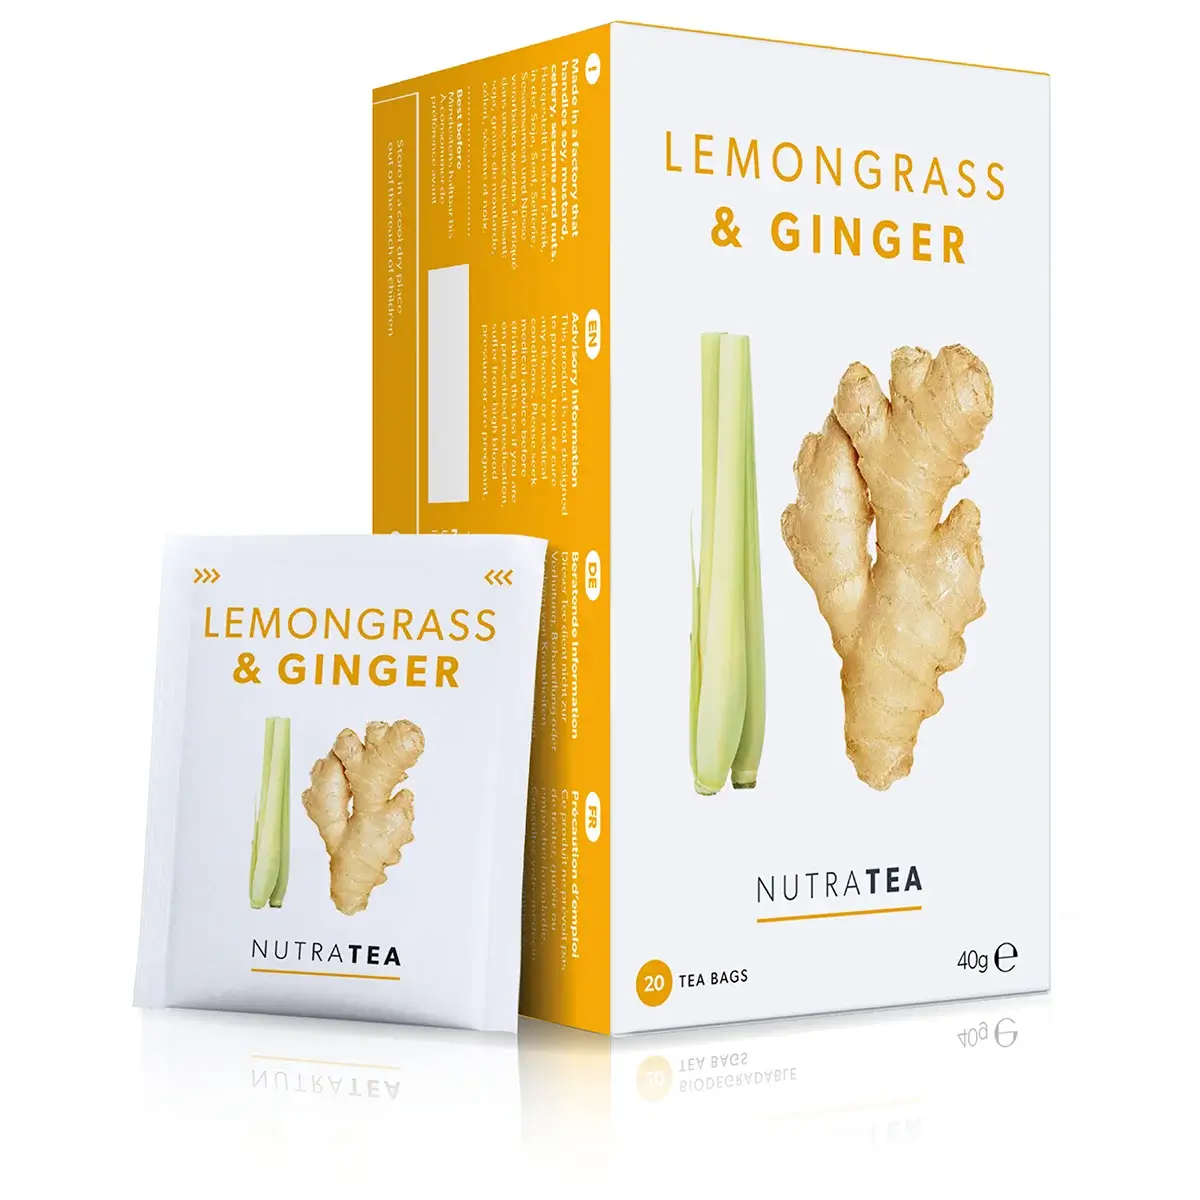 Lemongrass & Ginger Tea - Herbal Tea - 20 Enveloped Tea Bags